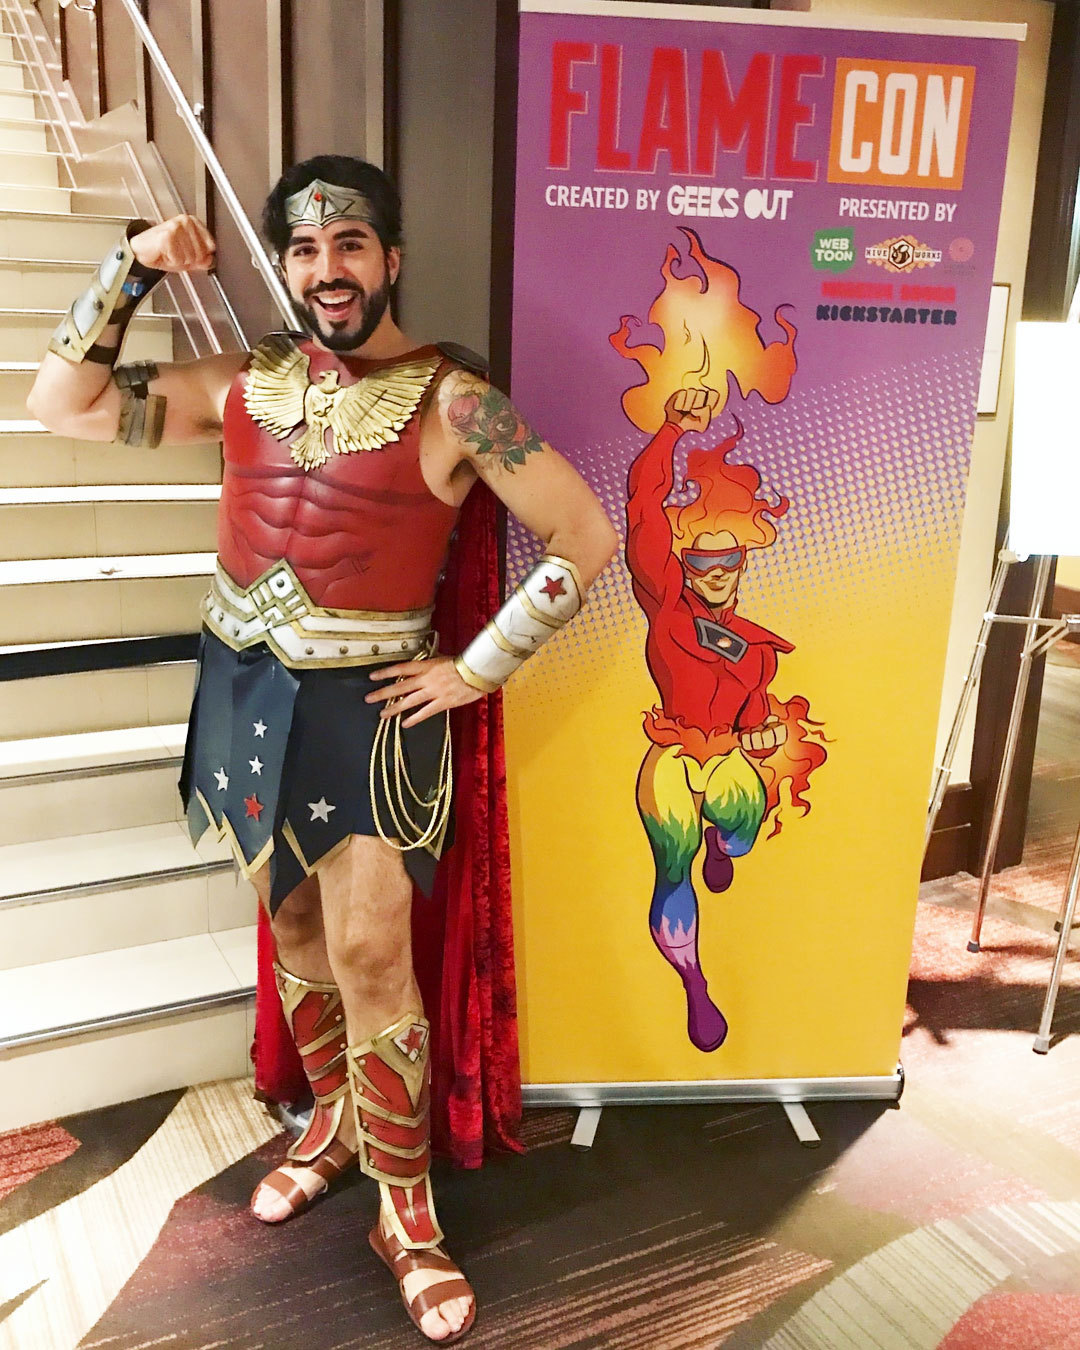 2018082301355262 - 最大的LGBT动漫展Flame Con在纽约登场